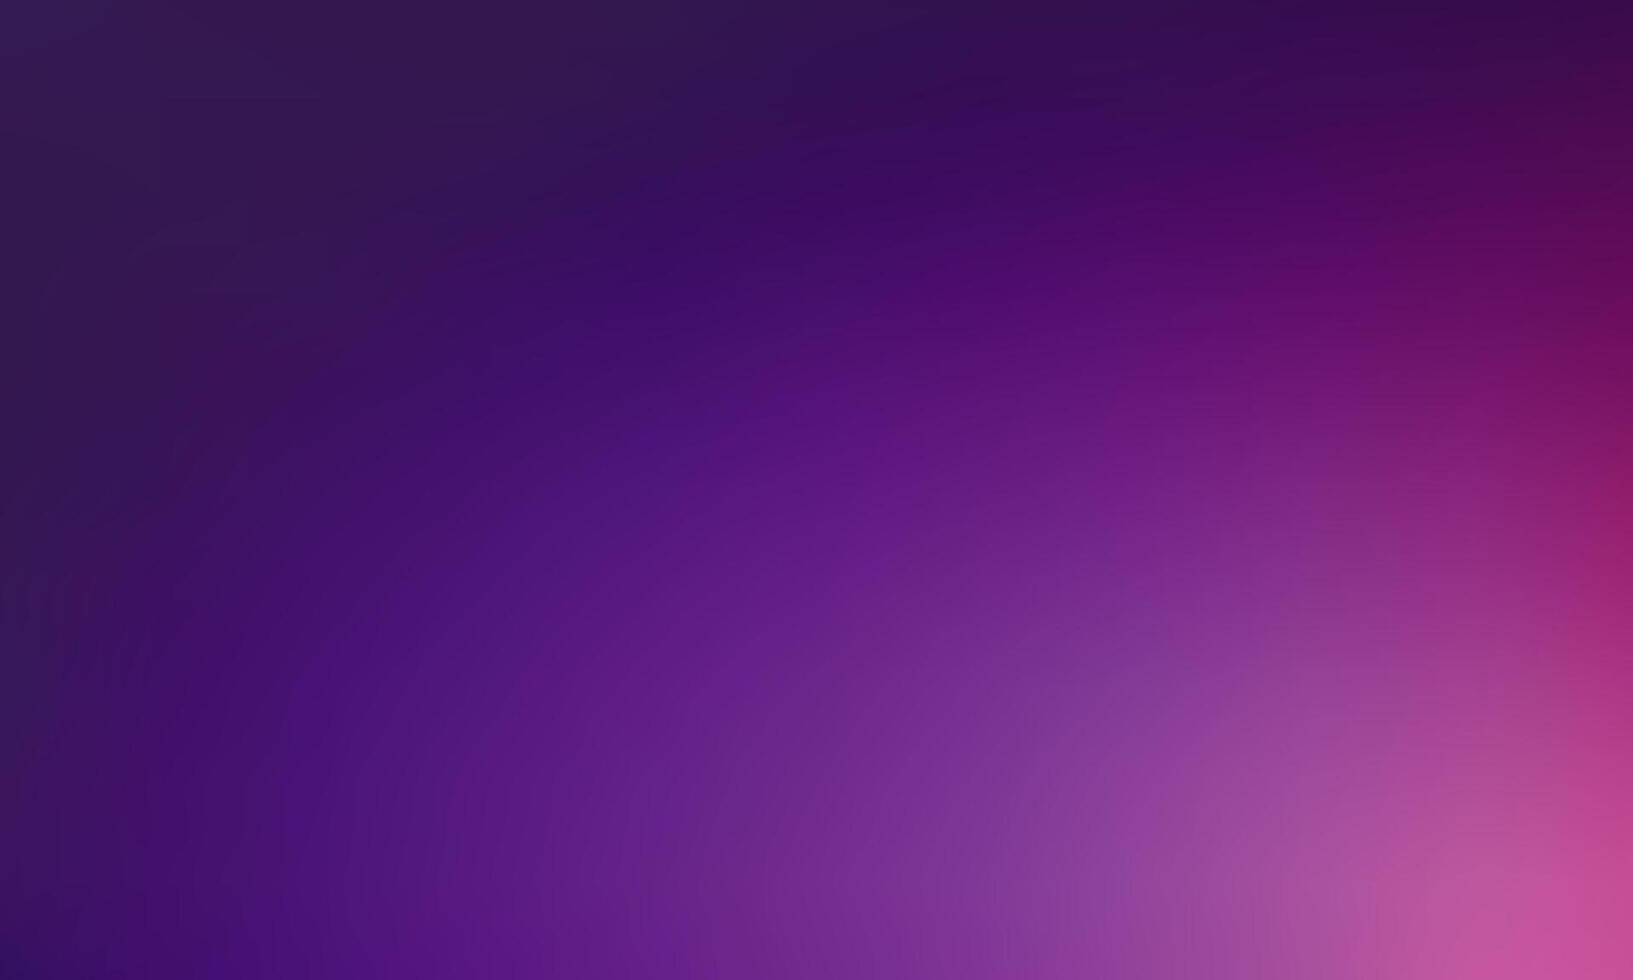 Rich Dark Purple Gradient Background Design vector